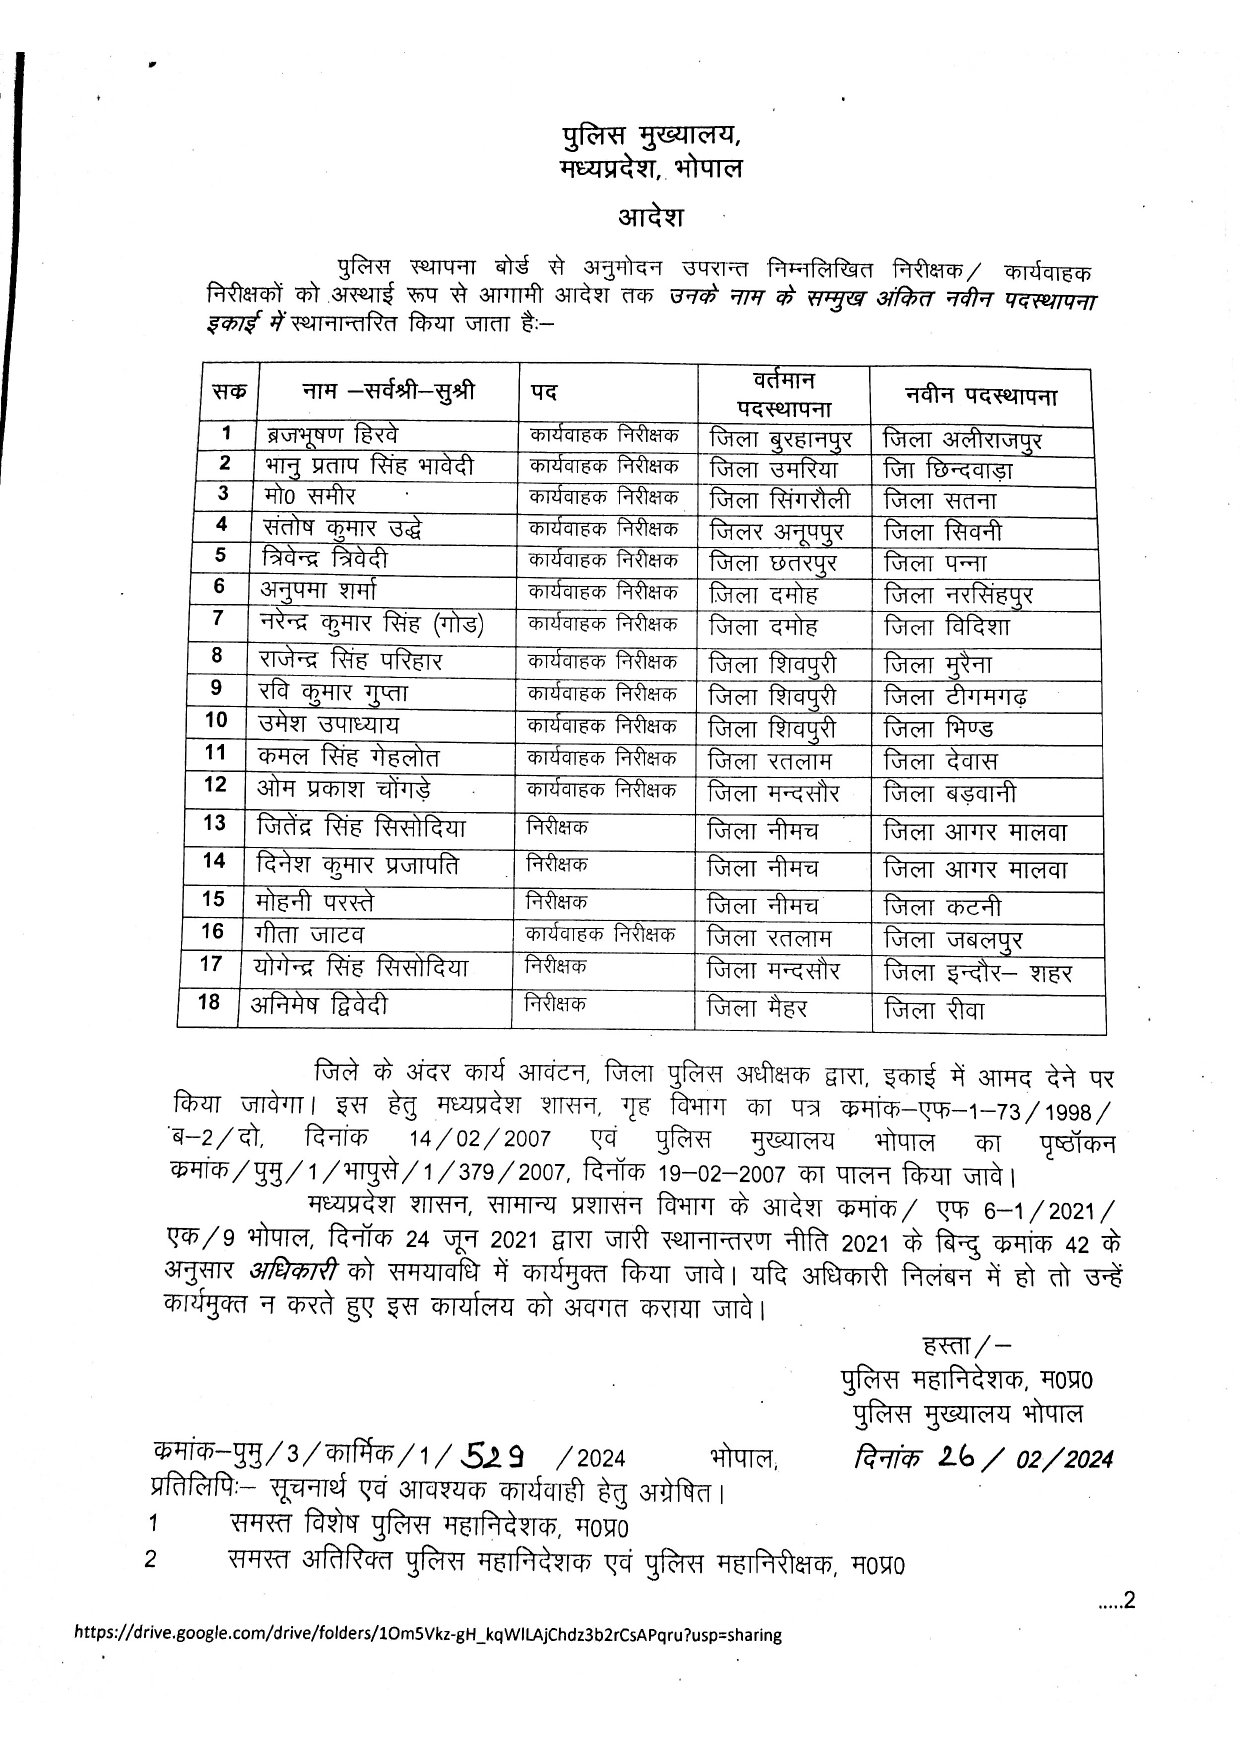 MP Police Transfer List Today: मध्य प्रदेश पुलिस विभाग में हुआ बड़ा फेरबदल, निरीक्षक एवं कार्यवाहक निरीक्षक की तबादला सूची जारी